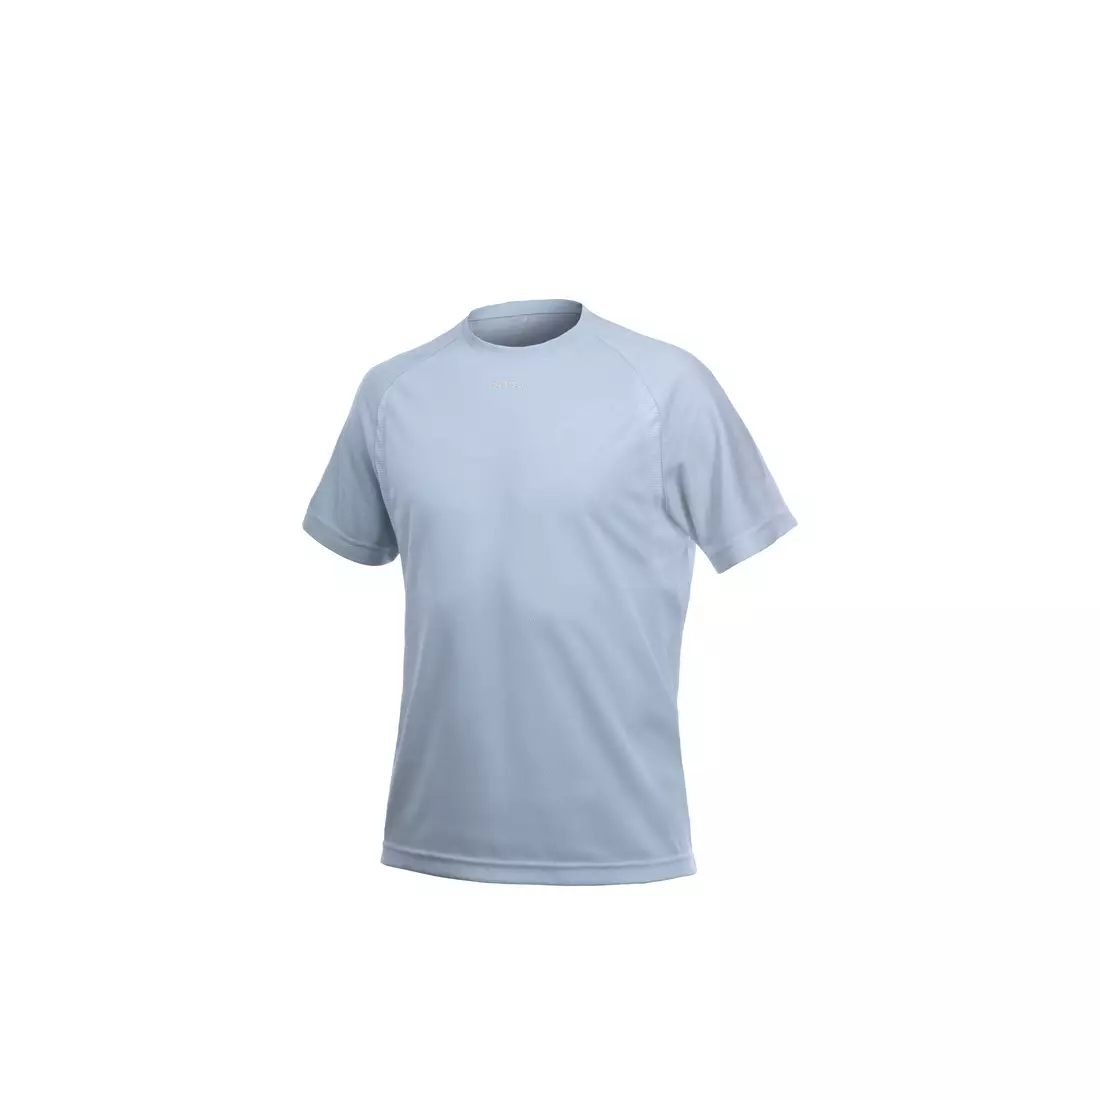 CRAFT ACTIVE - tricou alergare bărbați 1900655-1930